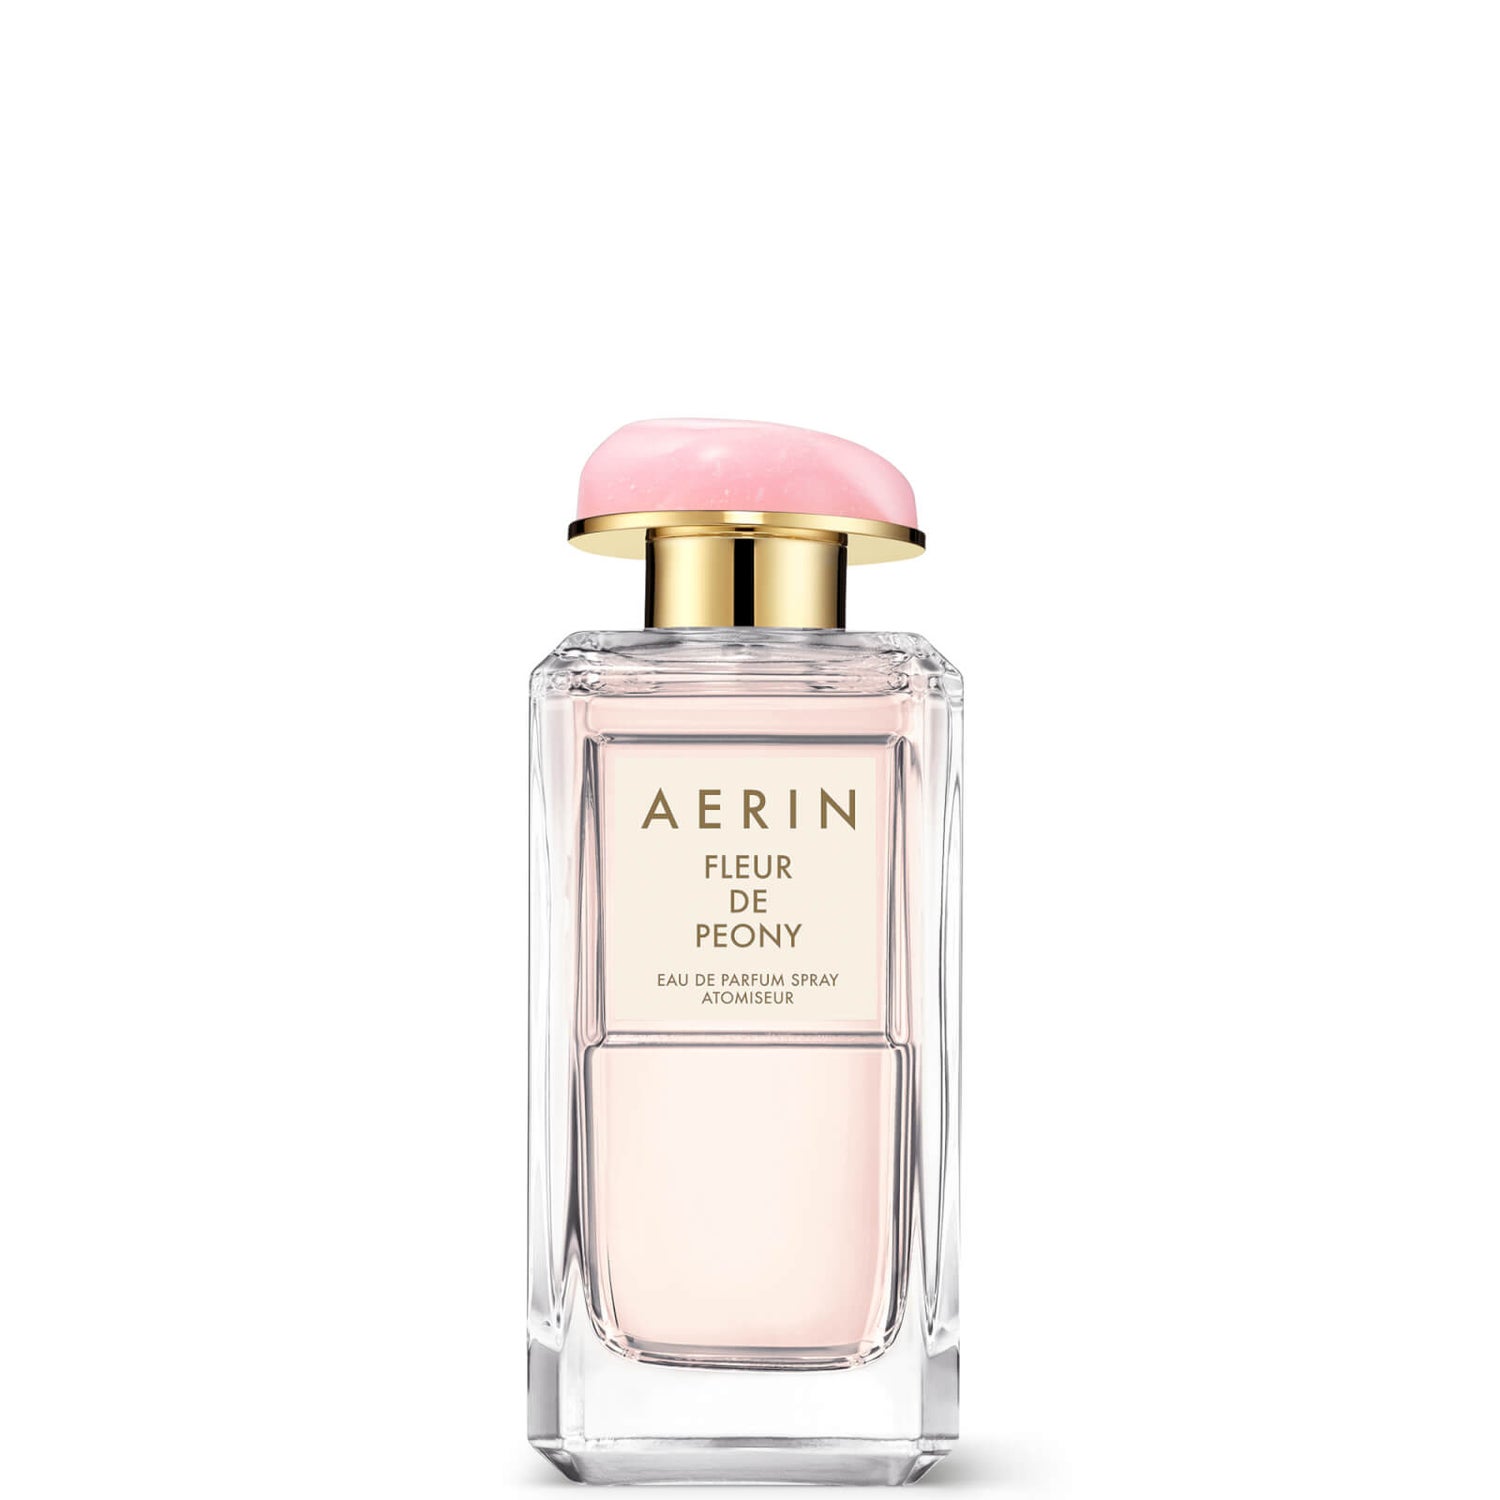 AERIN Fleur De Peony Eau de Parfum 100ml - LOOKFANTASTIC